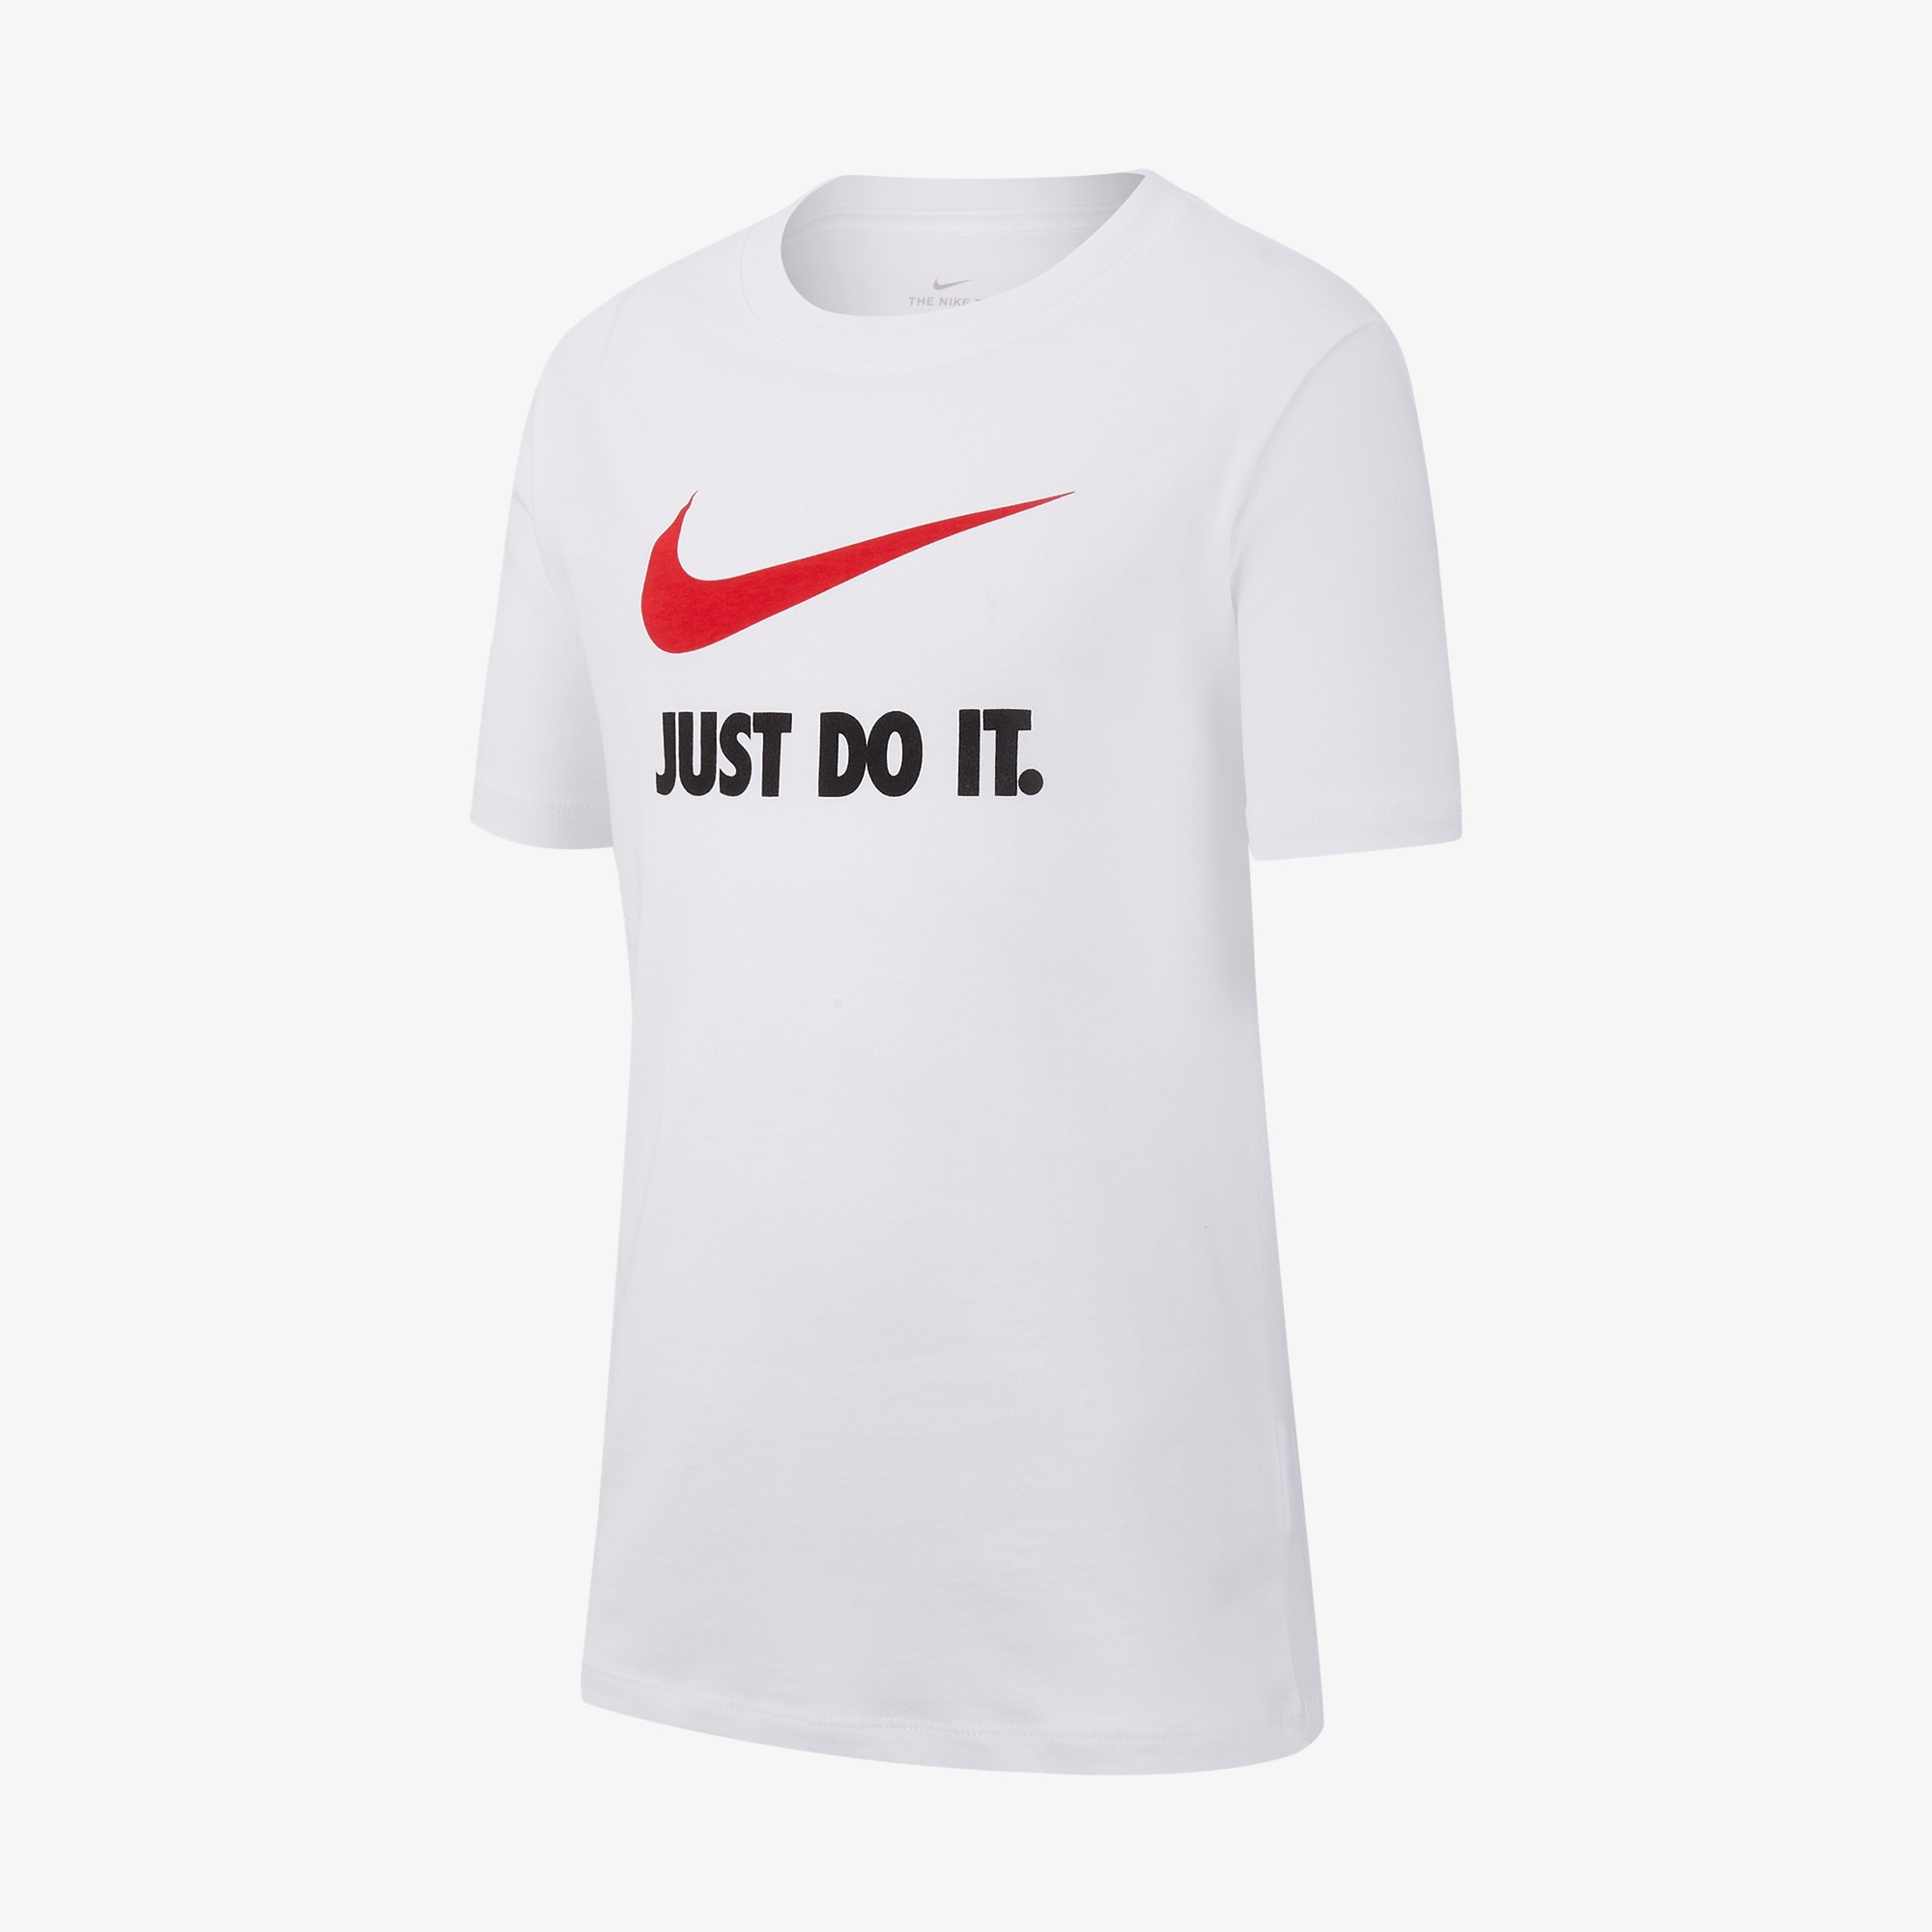 Nike Sportswear Çocuk Beyaz T-Shirt